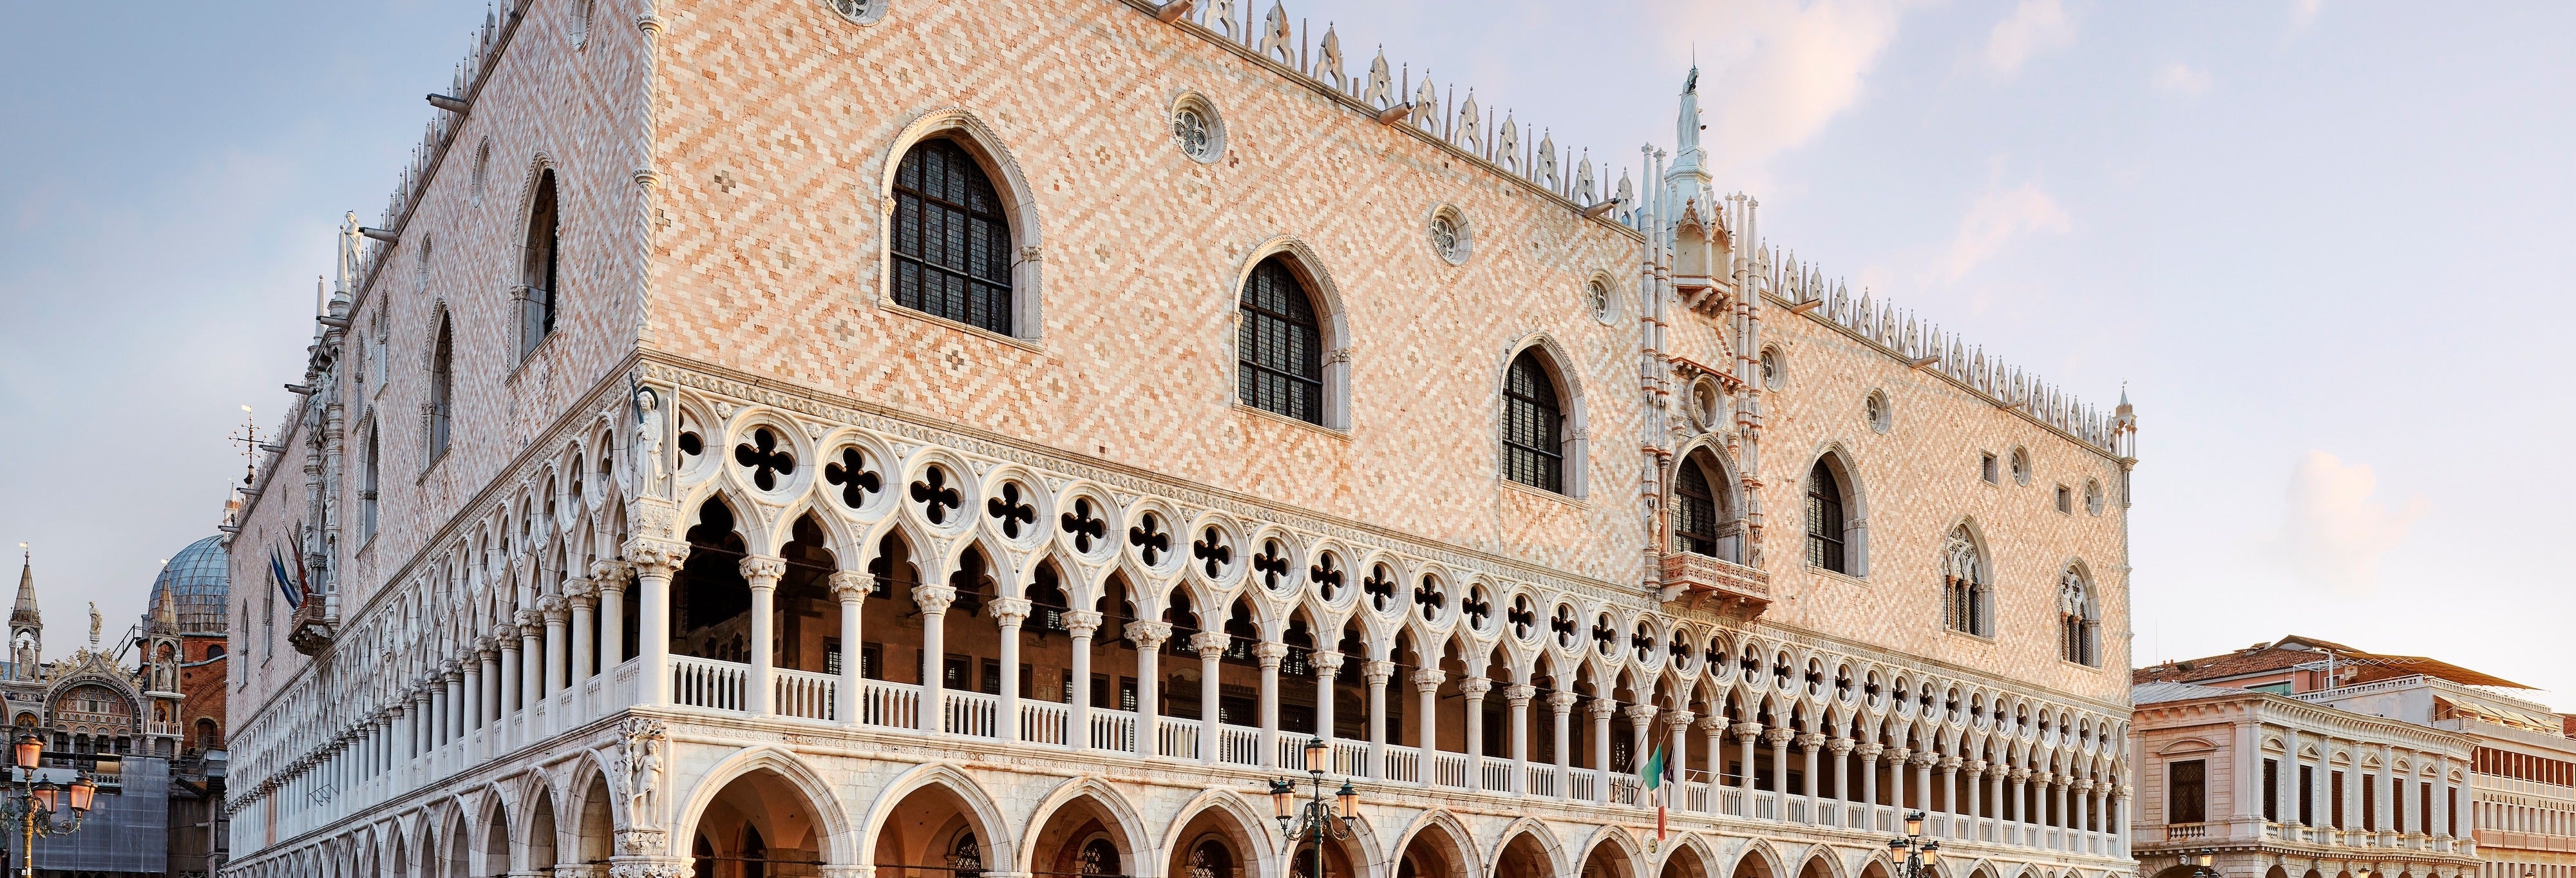 Palácio Ducal de Veneza